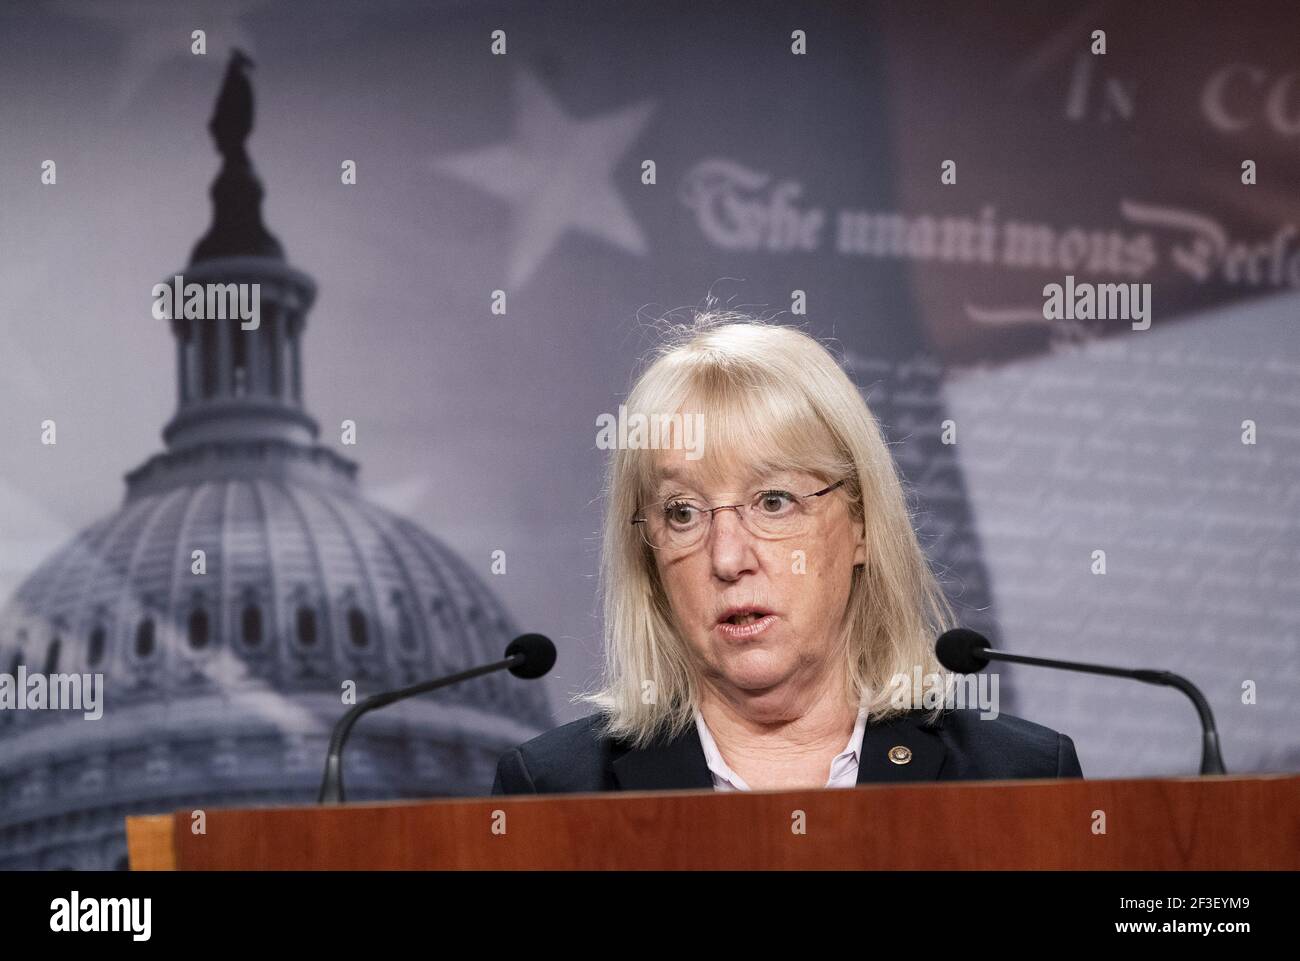 Washington, Usa. März 2021, 16th. Sen. Patty Murray, D-WA, spricht bei einer Pressekonferenz im US-Kapitol in Washington, DC am Dienstag, 16. März 2021. Foto von Kevin Dietsch/UPI Kredit: UPI/Alamy Live News Stockfoto